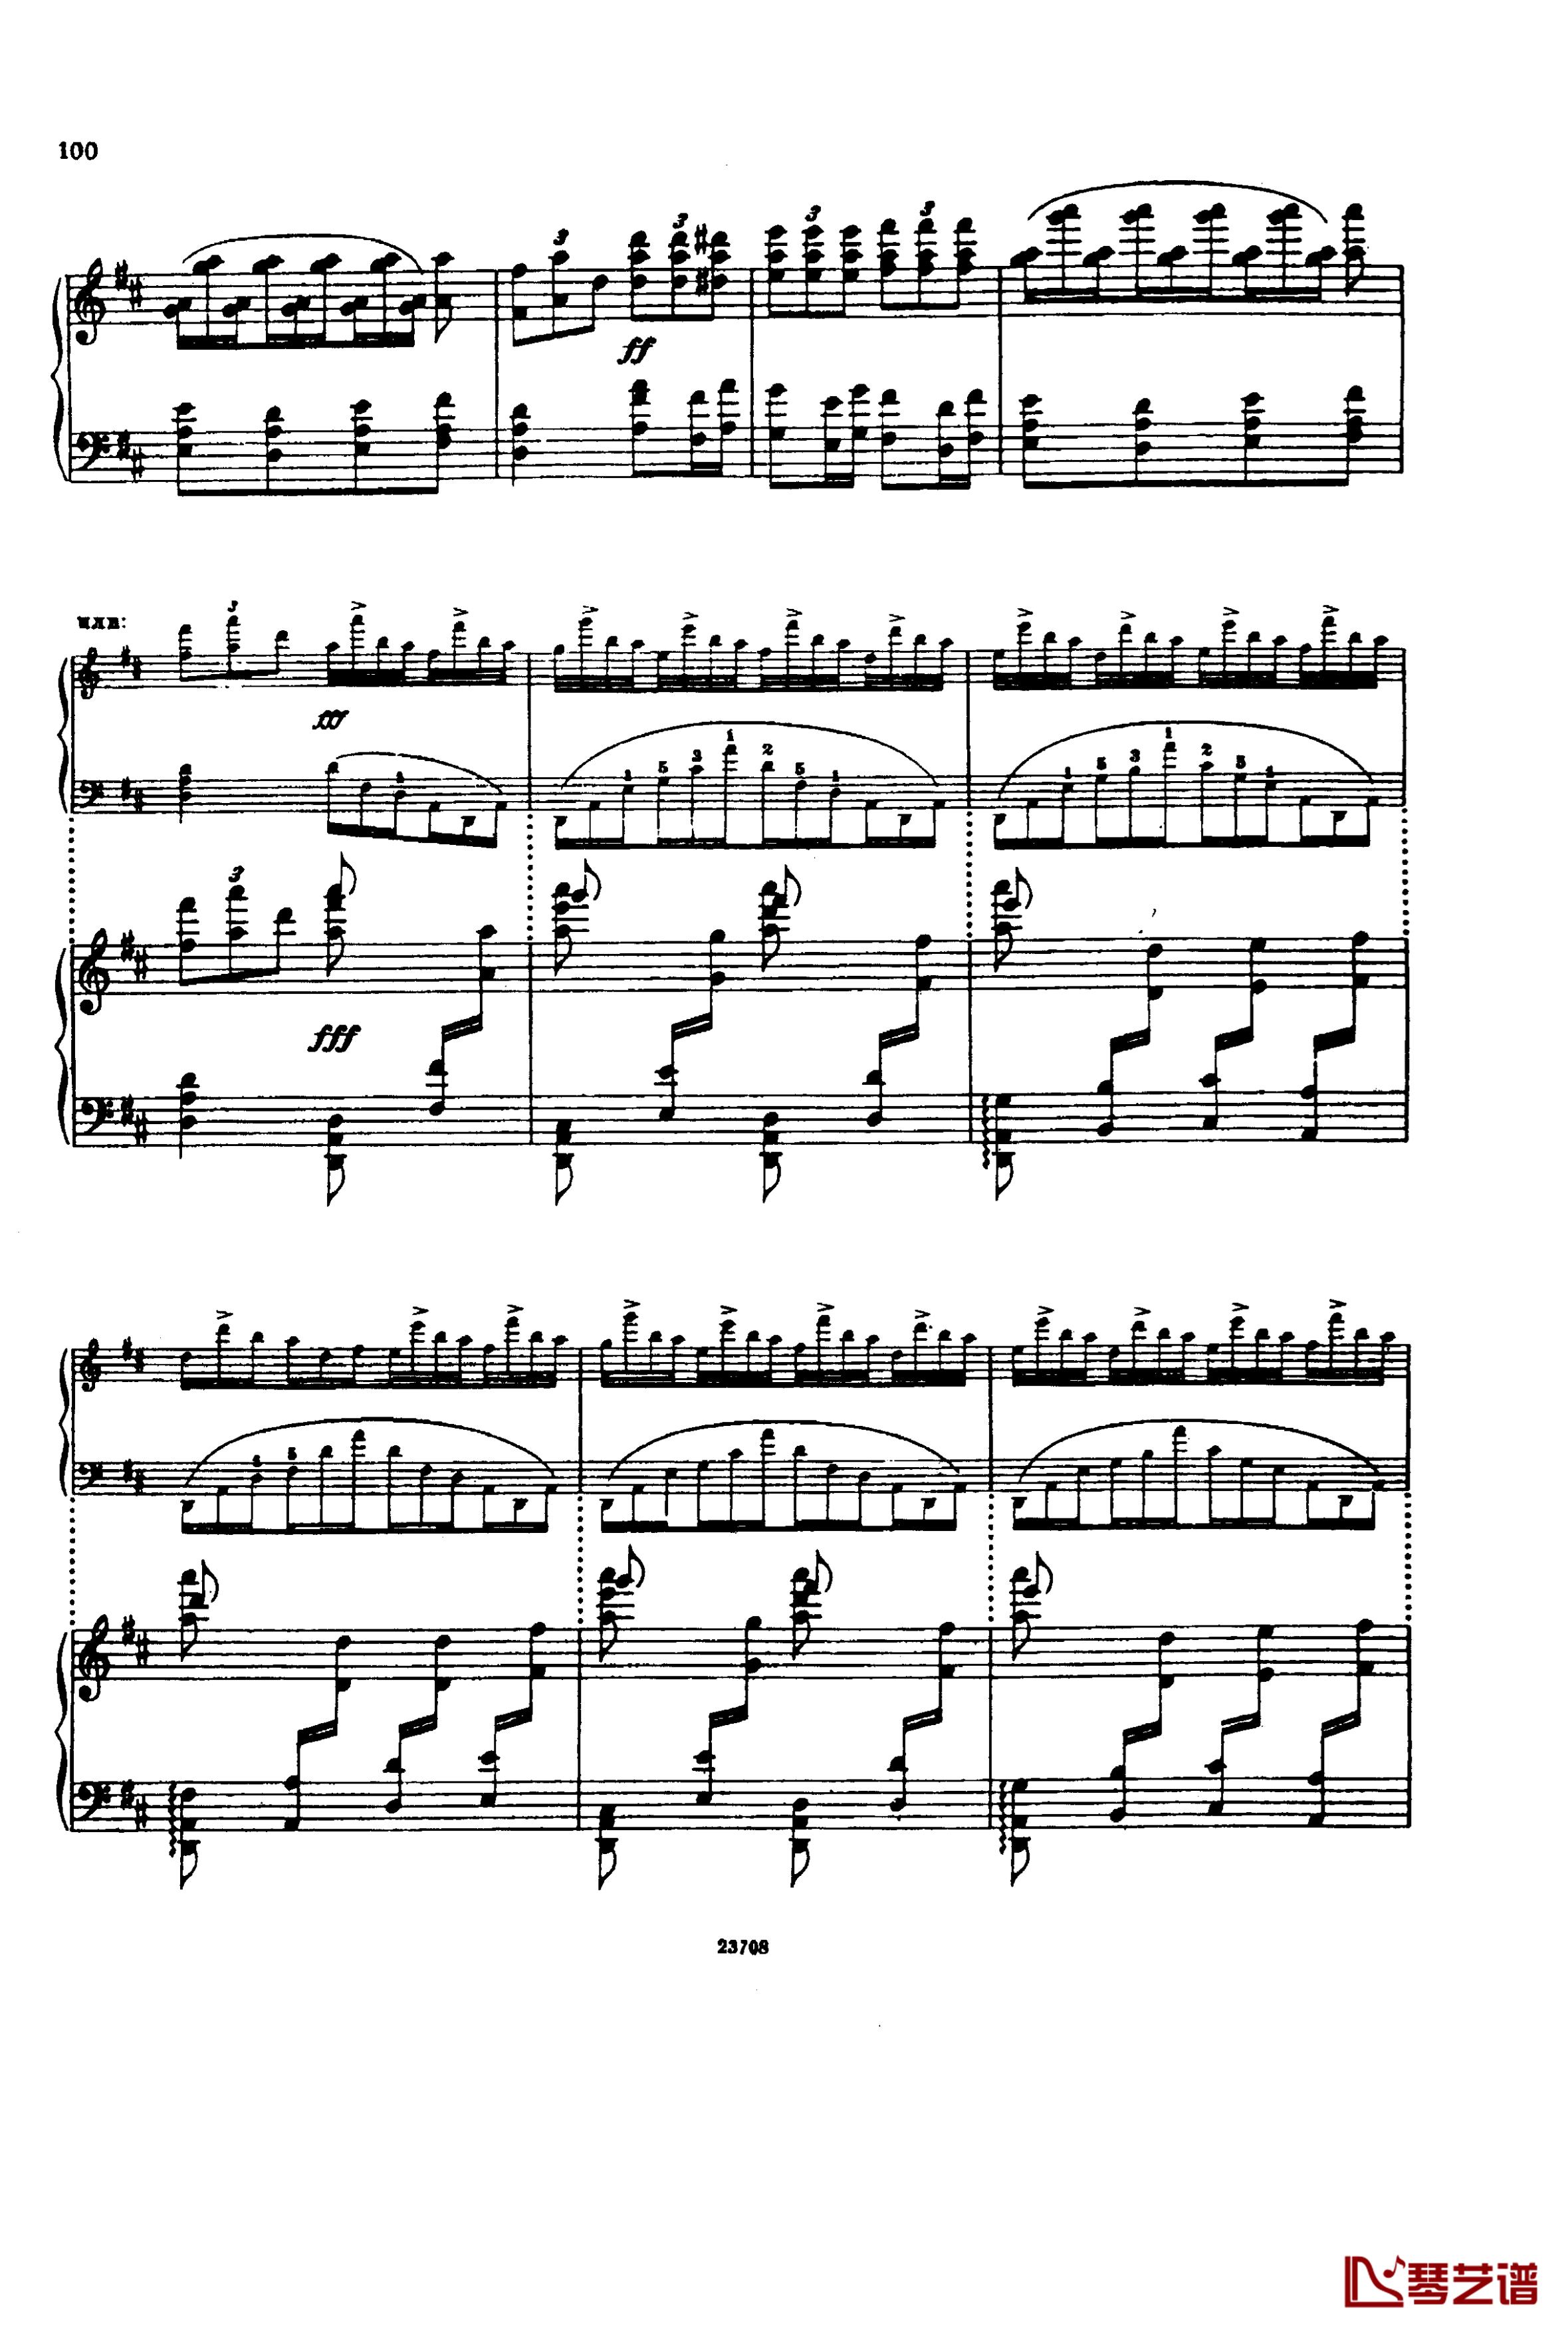 卡玛林斯卡亚幻想曲钢琴谱-格林卡14